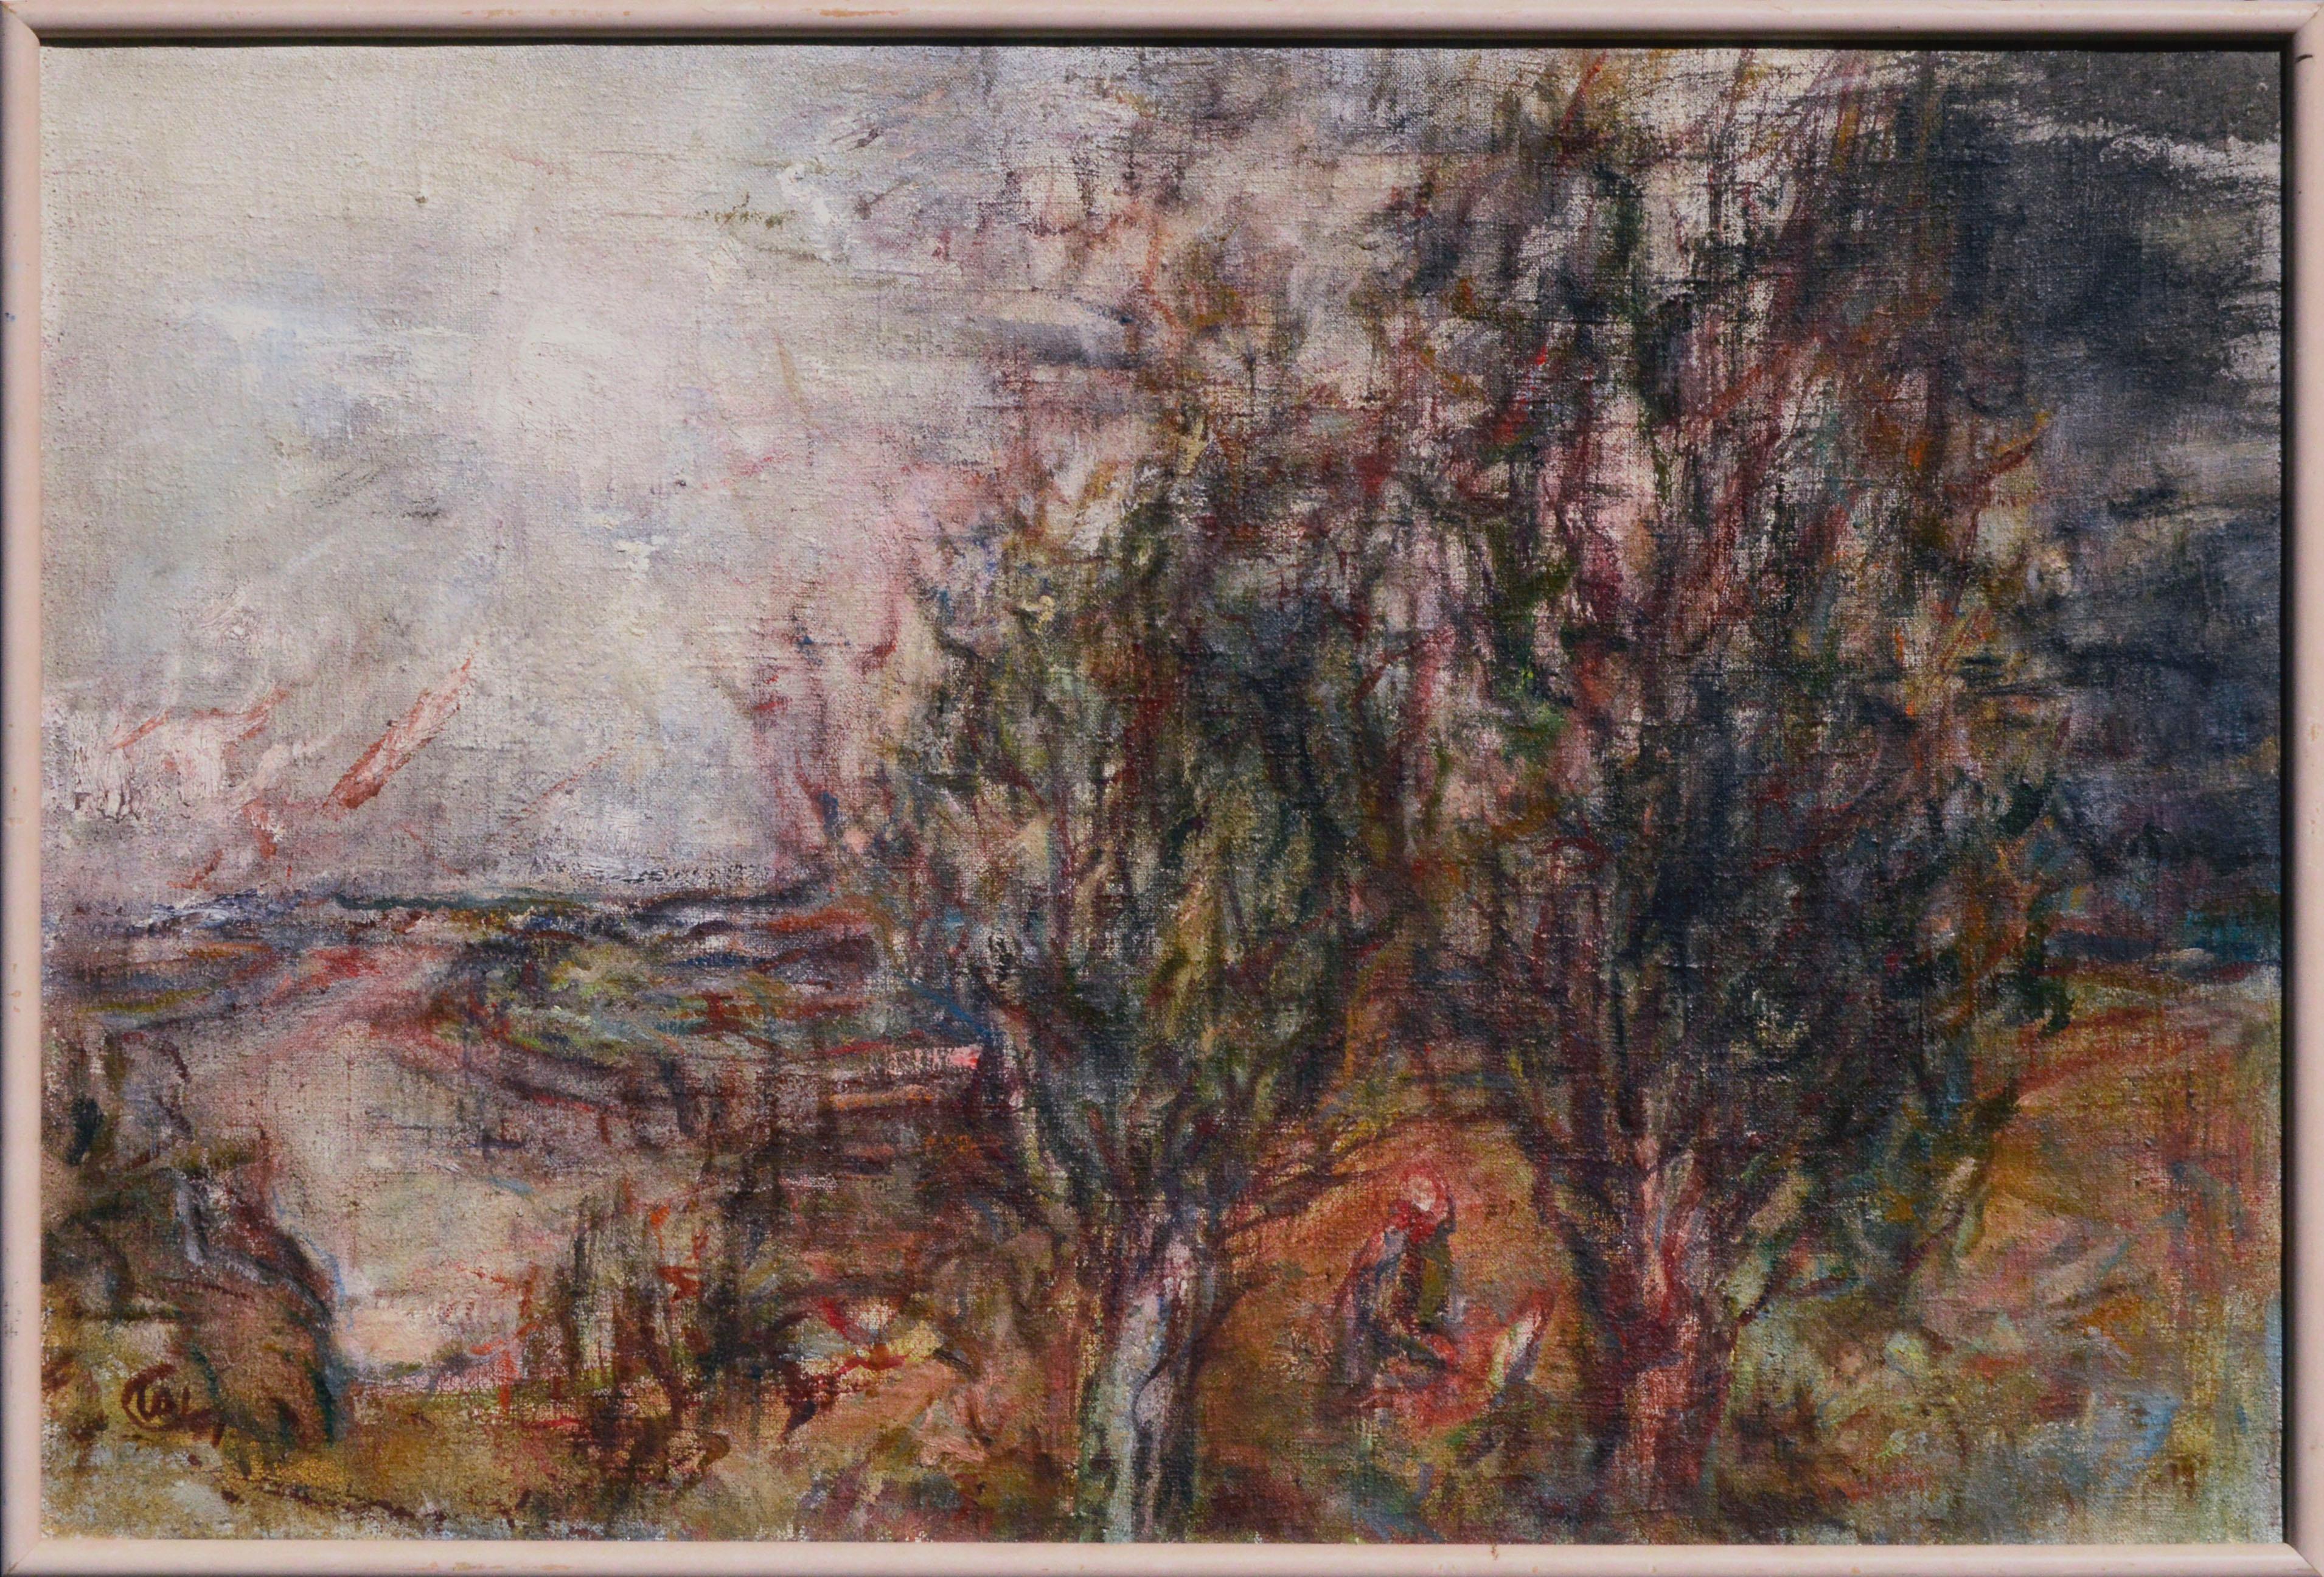 Paysage impressionniste d'une rivière à l'orée des bois par Yuri Gusev (russe, né en 1928). Il y a une figure agenouillée entre les arbres au premier plan. Présenté dans un cadre bronzé de couleur rose. 

Taille de l'image : 23.5 "H x 35.5 "W

Yuri